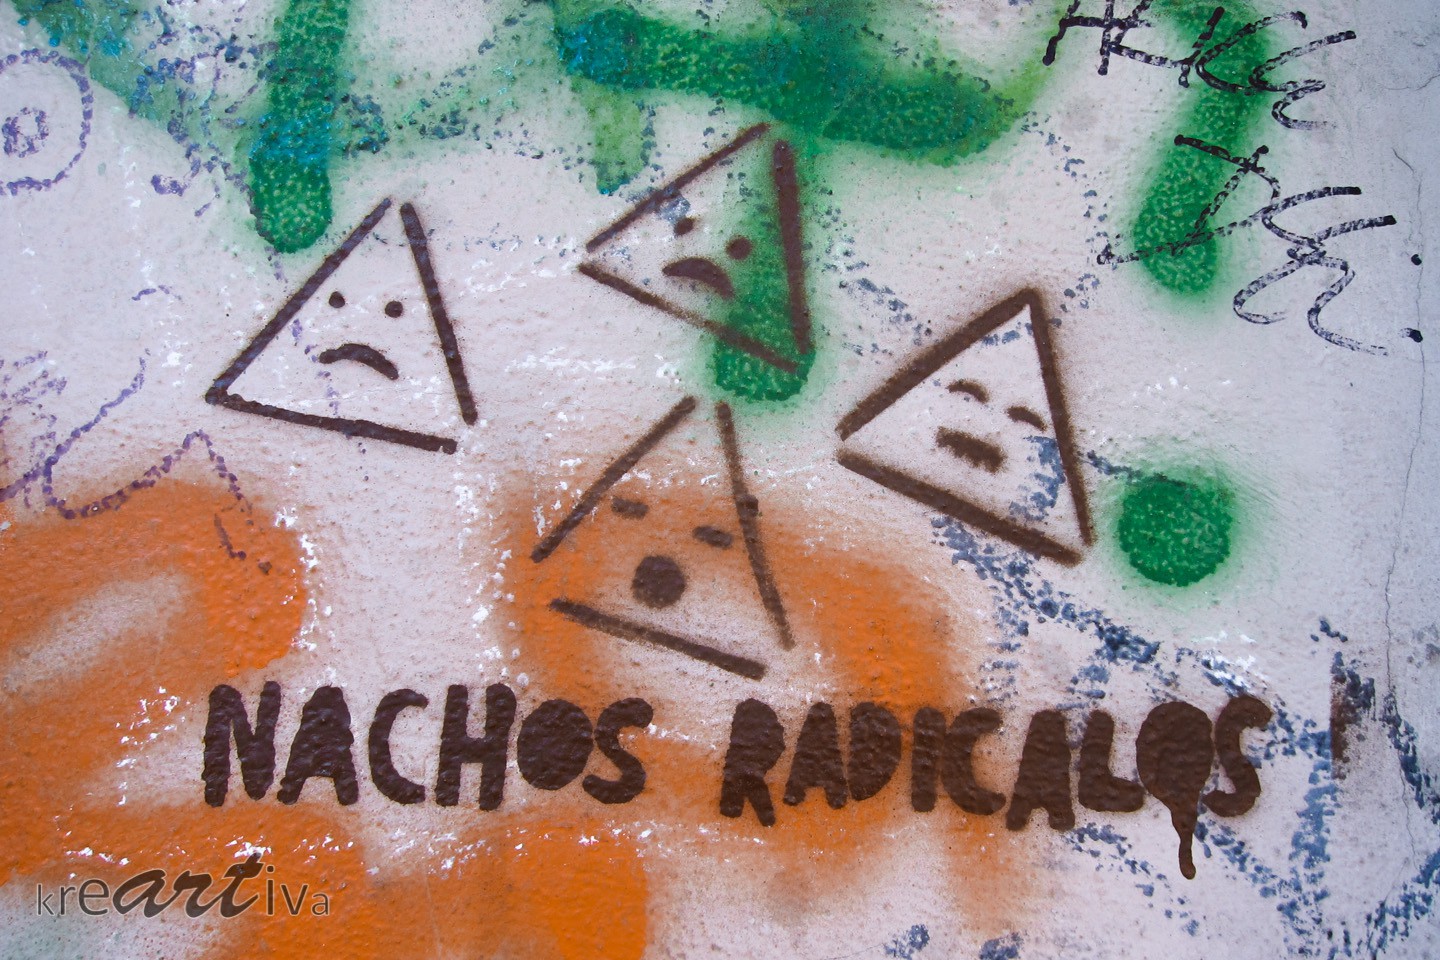 nachos radicalos, Dresden Deutschland 2014.